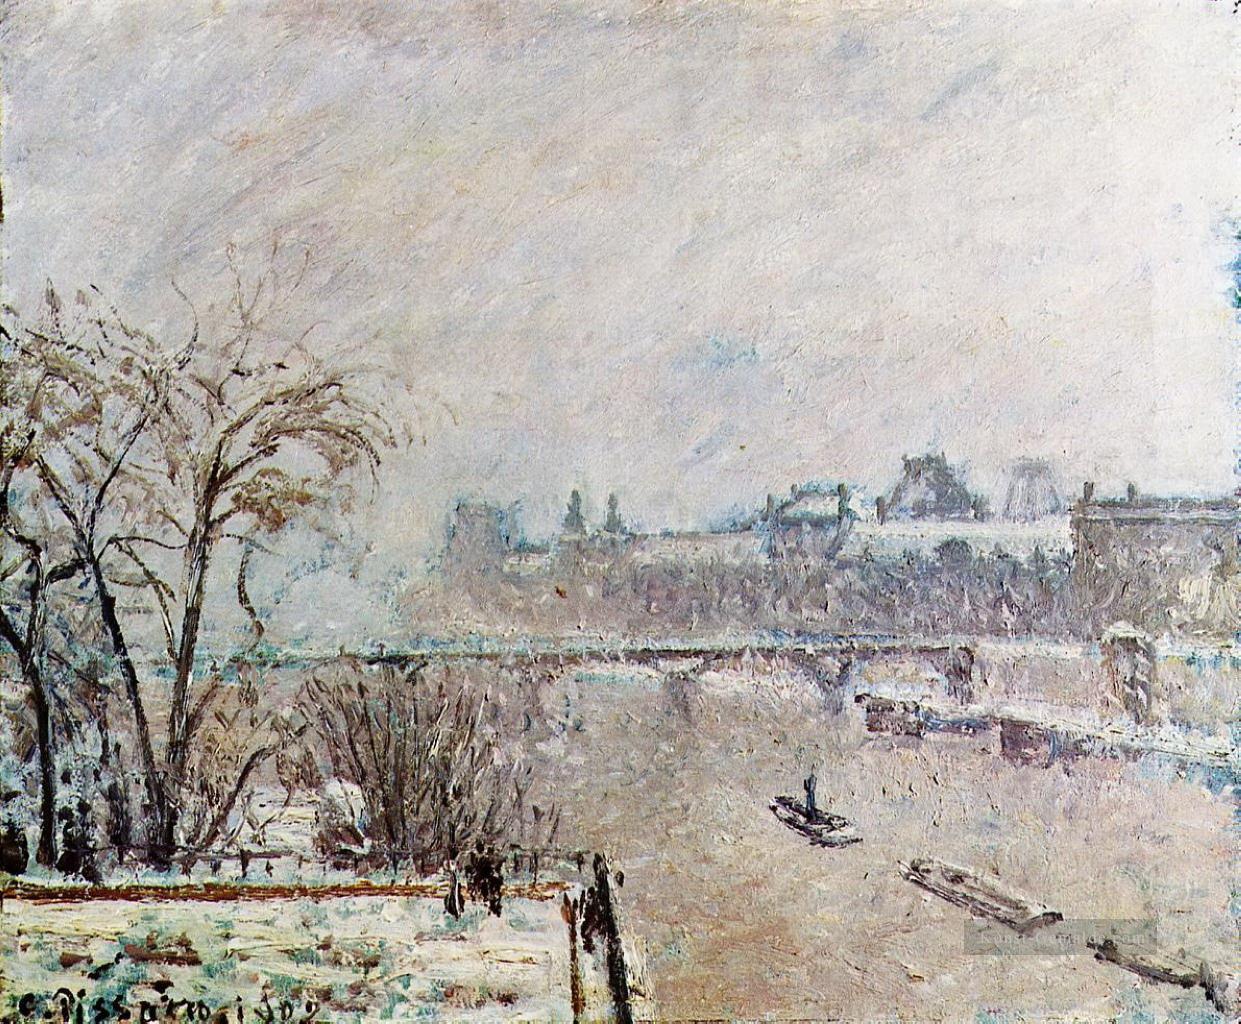 der Seine vom neuf Winter pont gesehen 1902 Camille Pissarro Landschaften Bach Ölgemälde